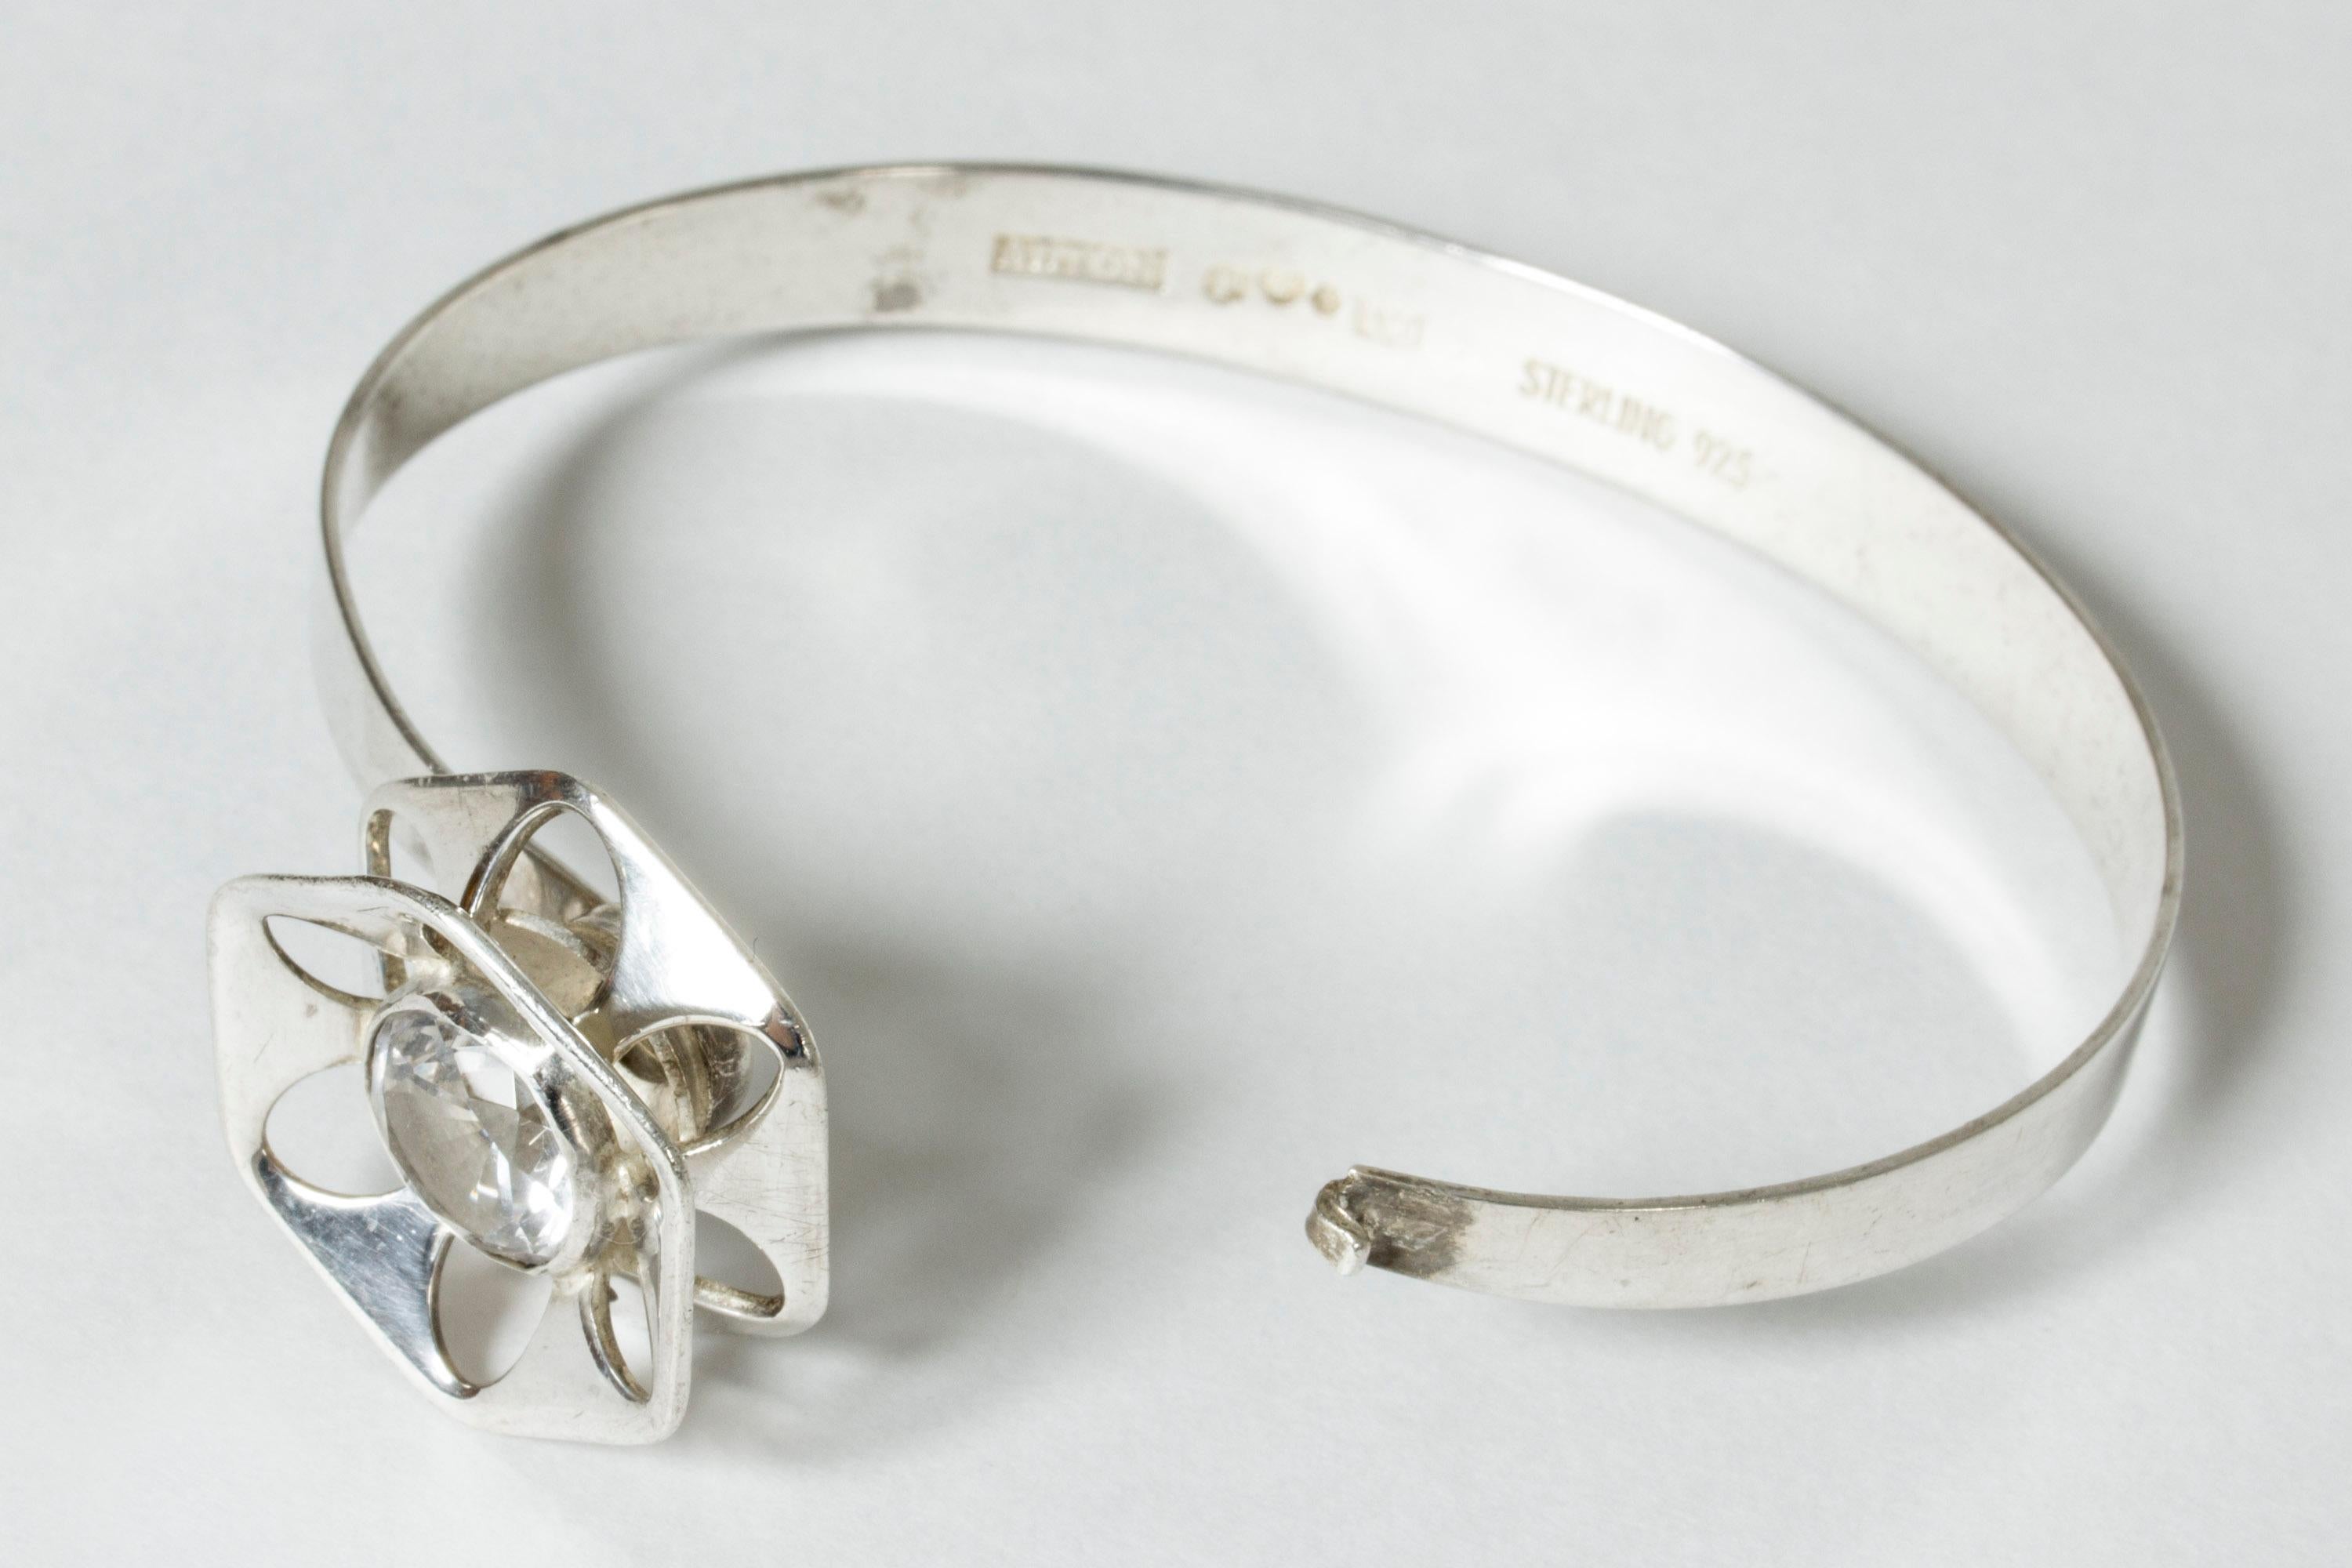 Rose Cut Silver and Rock Crystal Bracelet by Theresa Hvorslev for Alton, Sweden